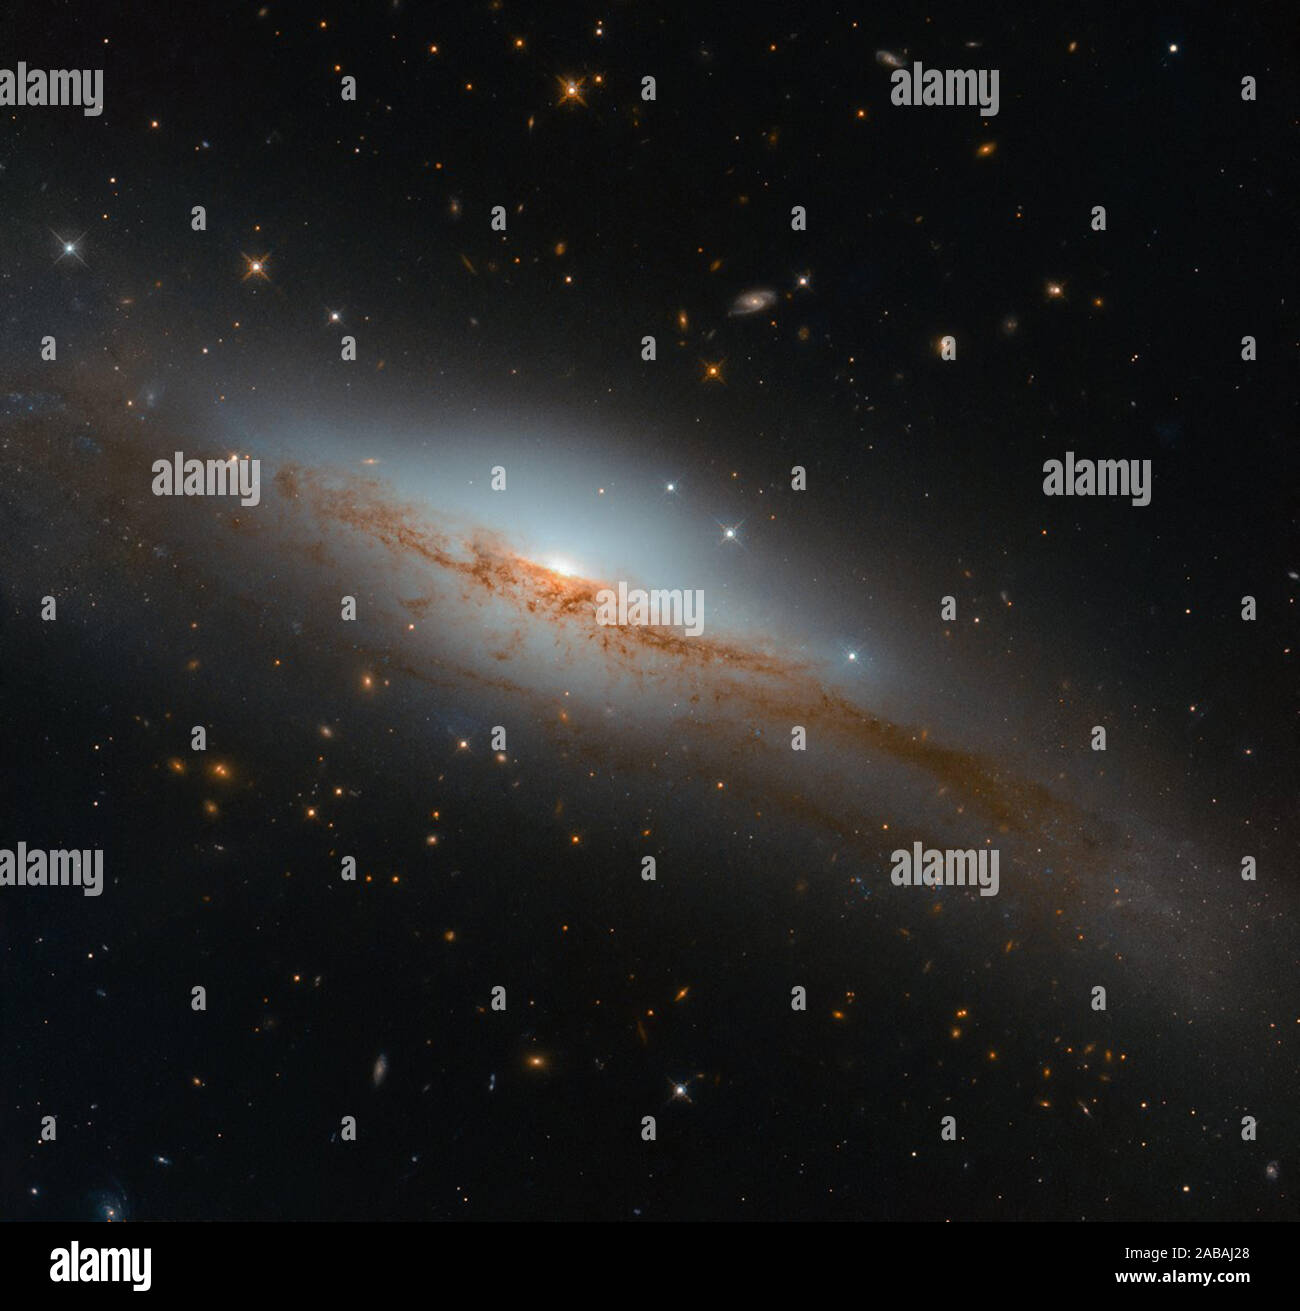 Per questa immagine, la NASA/ESA Telescopio Spaziale Hubble ha orientato la sua potente occhio verso un'emissione-line chiamato galassia NGC 3749. Quando gli astronomi esplorare i contenuti e le parti costitutive di una galassia da qualche parte nell'universo, essi utilizzano varie tecniche e strumenti. Da caccia di segni specifici di emissione da vari elementi all interno di una galassia spettro di luce - le cosiddette linee di emissione - o, viceversa, i segni di assorbimento da parte di altri elementi, cosiddette linee di assorbimento, gli astronomi possono iniziare a dedurre che cosa potrebbe essere successo all'interno. Sebbene non tutte le galassie visualizzare forti linee di emissione, NG Foto Stock